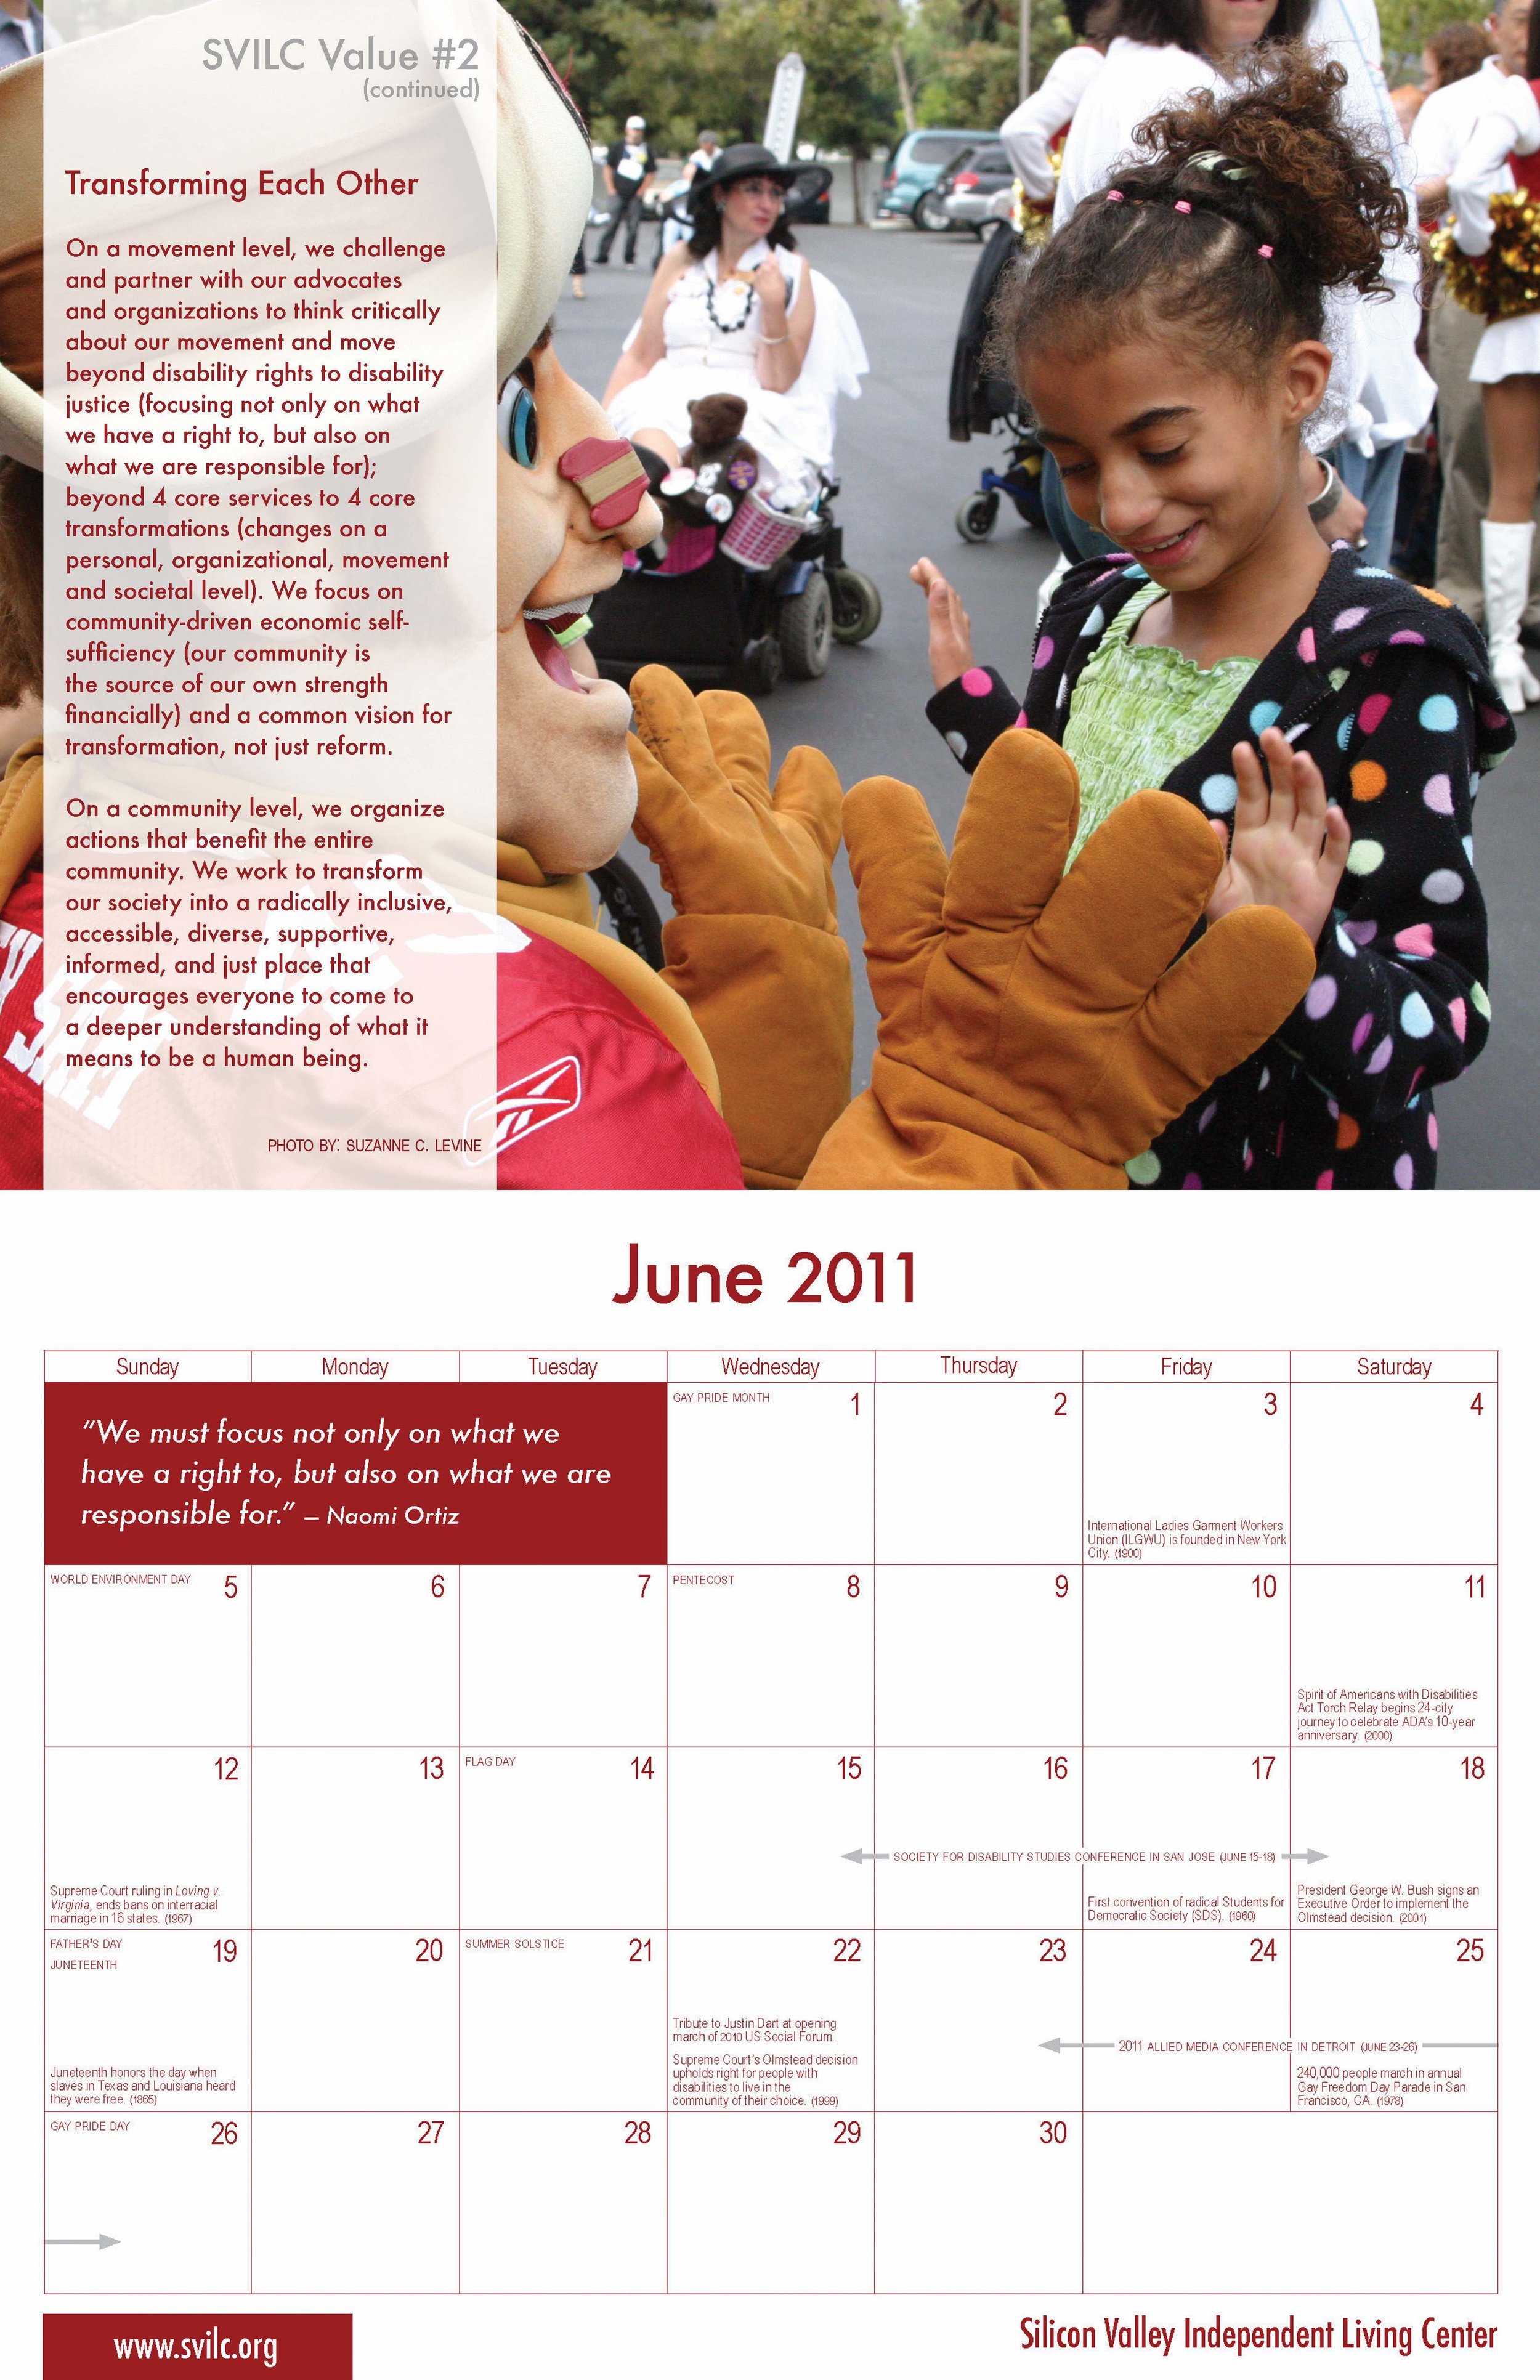   SVILC 2011 Calendar  June spread 